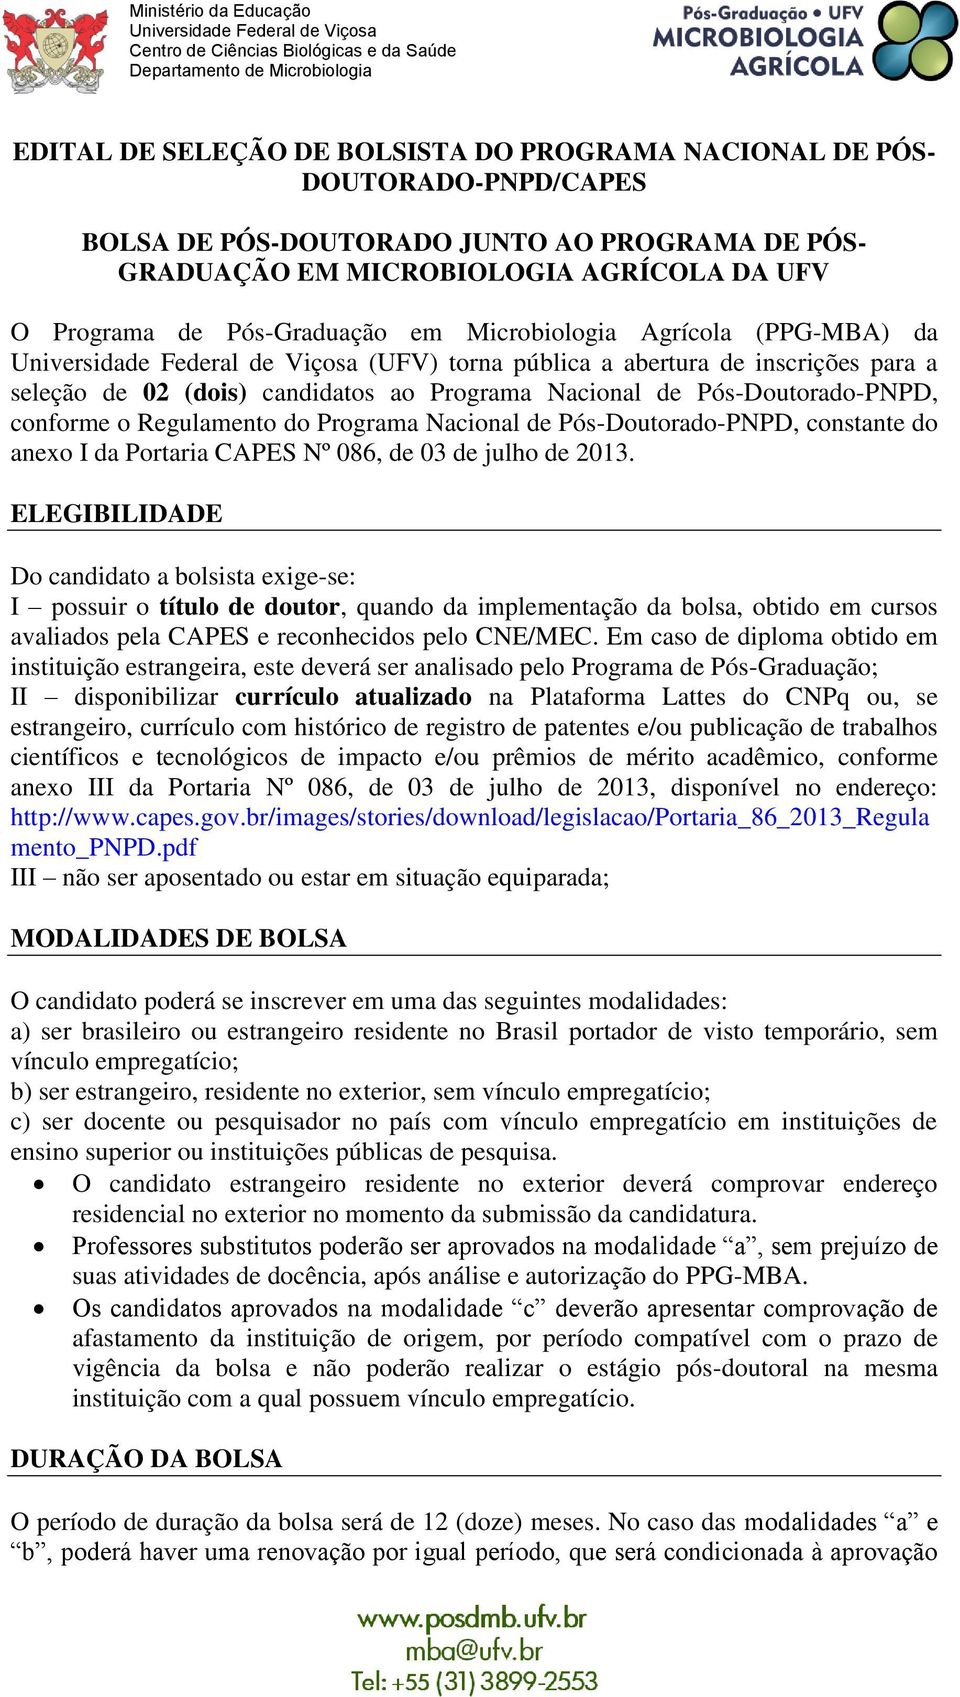 Programa Nacional de Pós-Doutorado-PNPD, constante do anexo I da Portaria CAPES Nº 086, de 03 de julho de 2013.